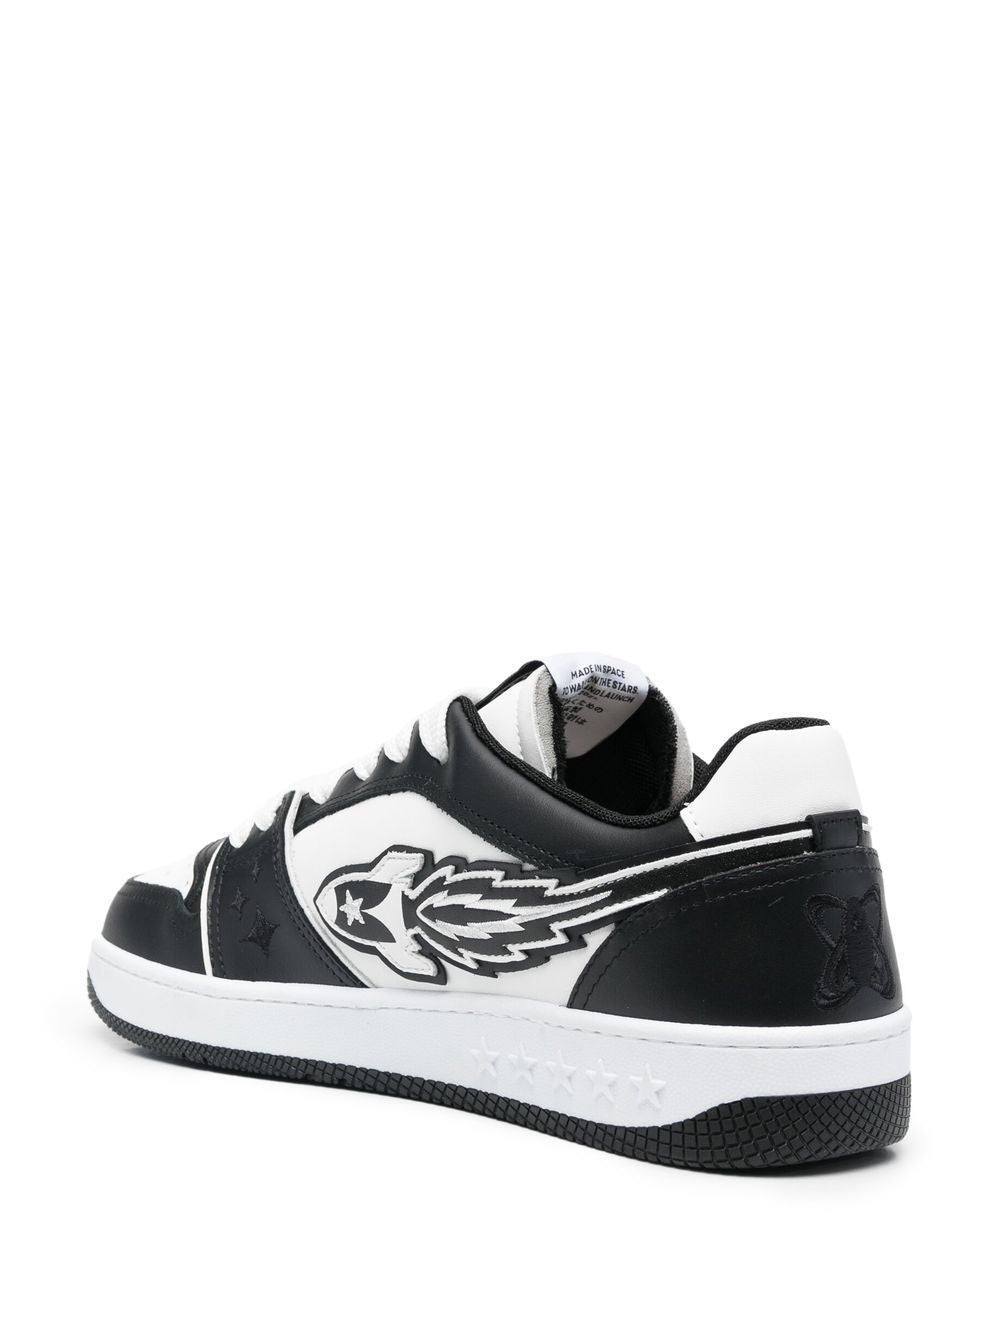 Sneaker in pelle nera/bianca con logo